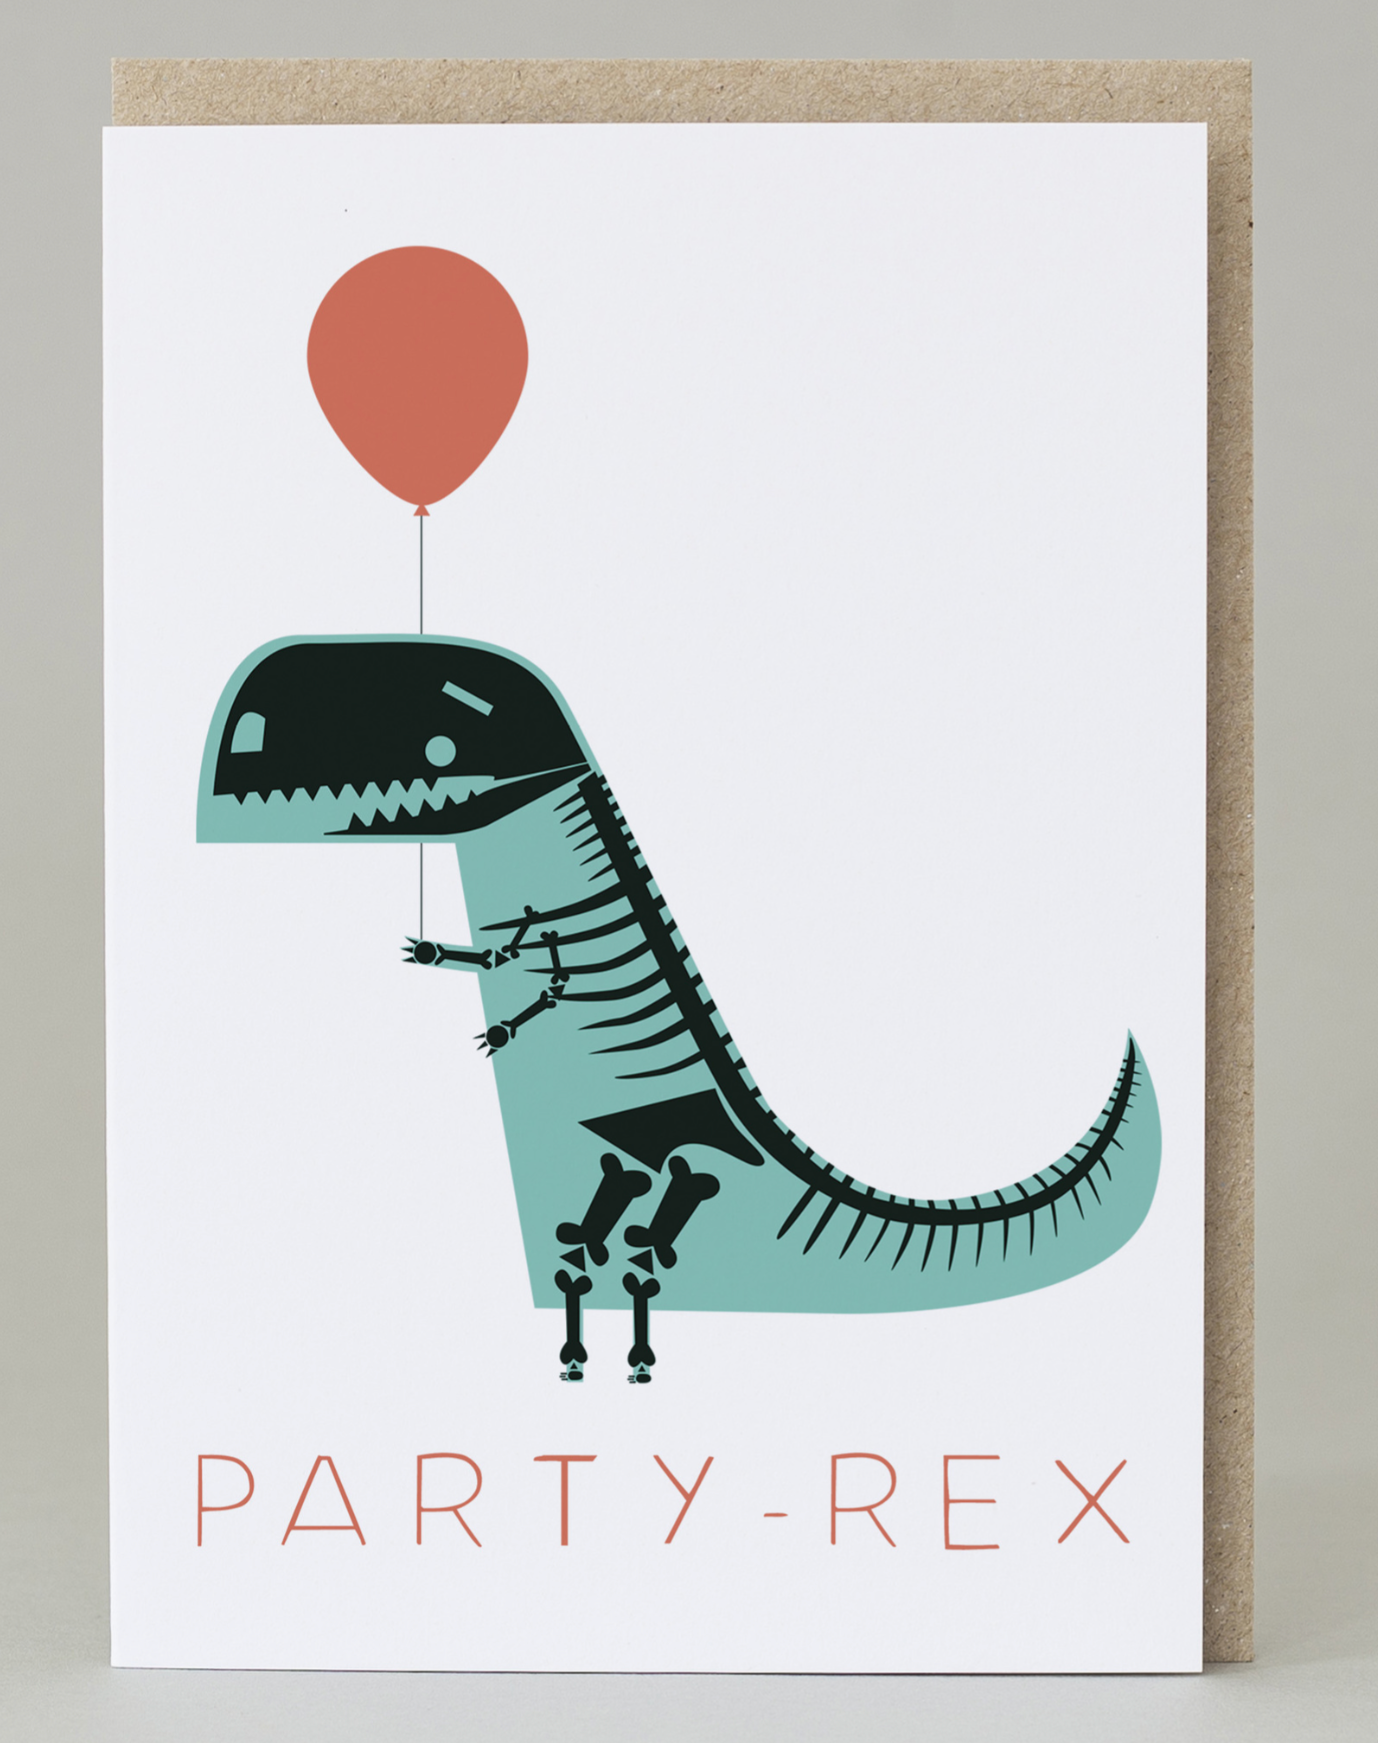 Party-Rex